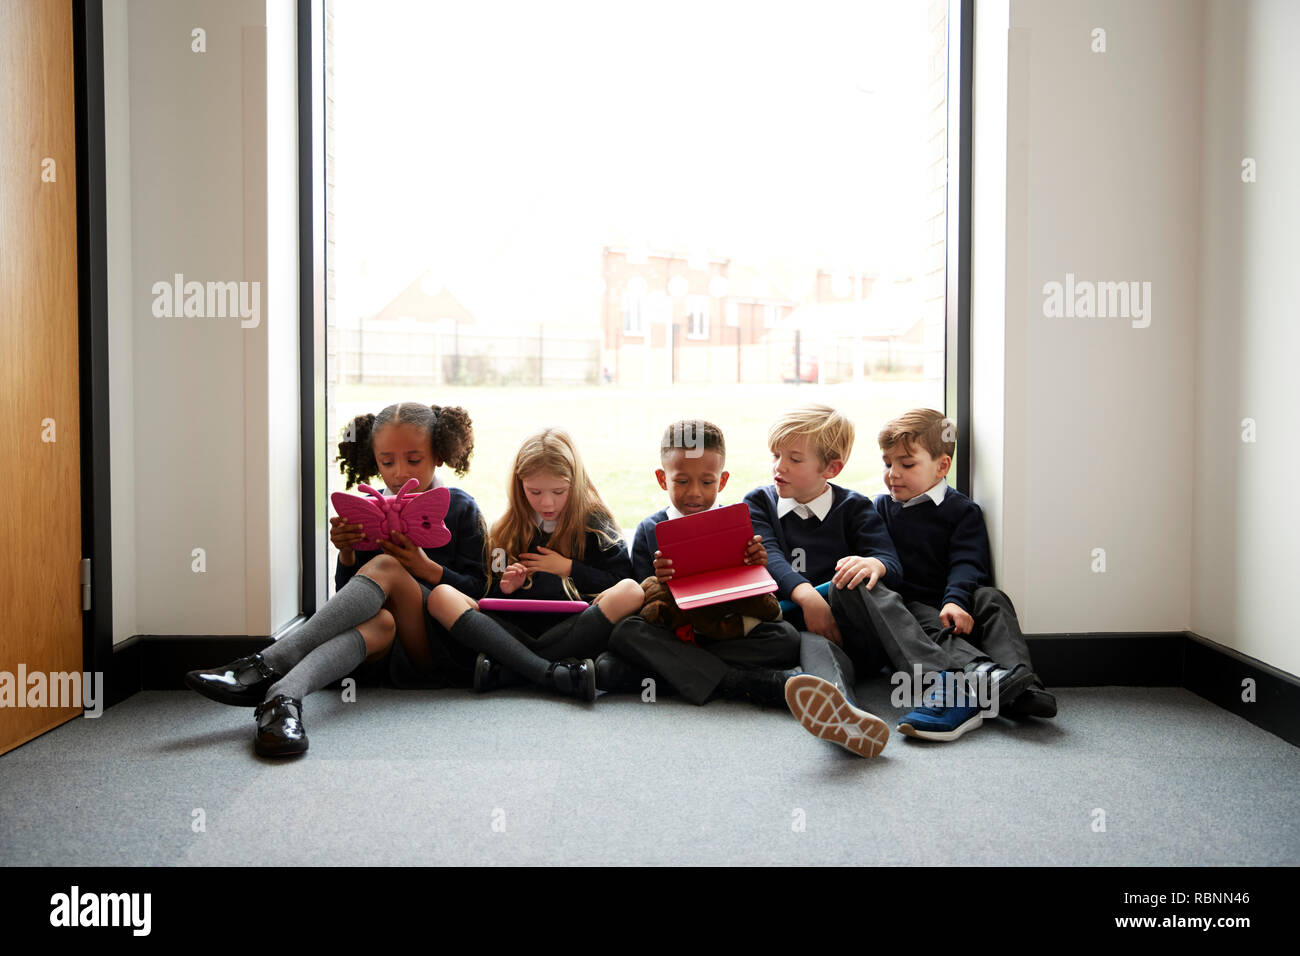 Grundschule Kinder in einer Reihe sitzen auf dem Boden vor einem Fenster in einer Schule Korridor mit Tablet Pcs, Vorderansicht Stockfoto